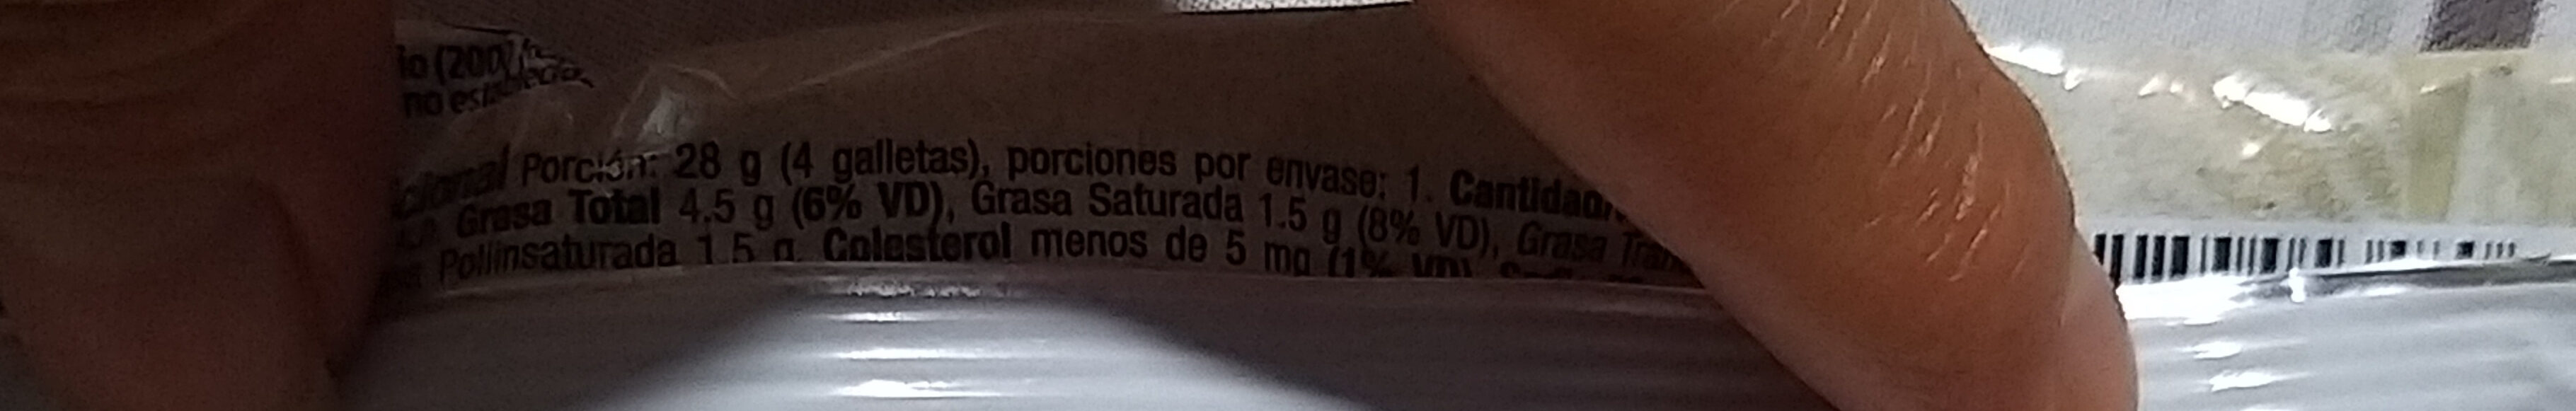 Galleta con Avena - Manzana y Canela - Nutrition facts - es